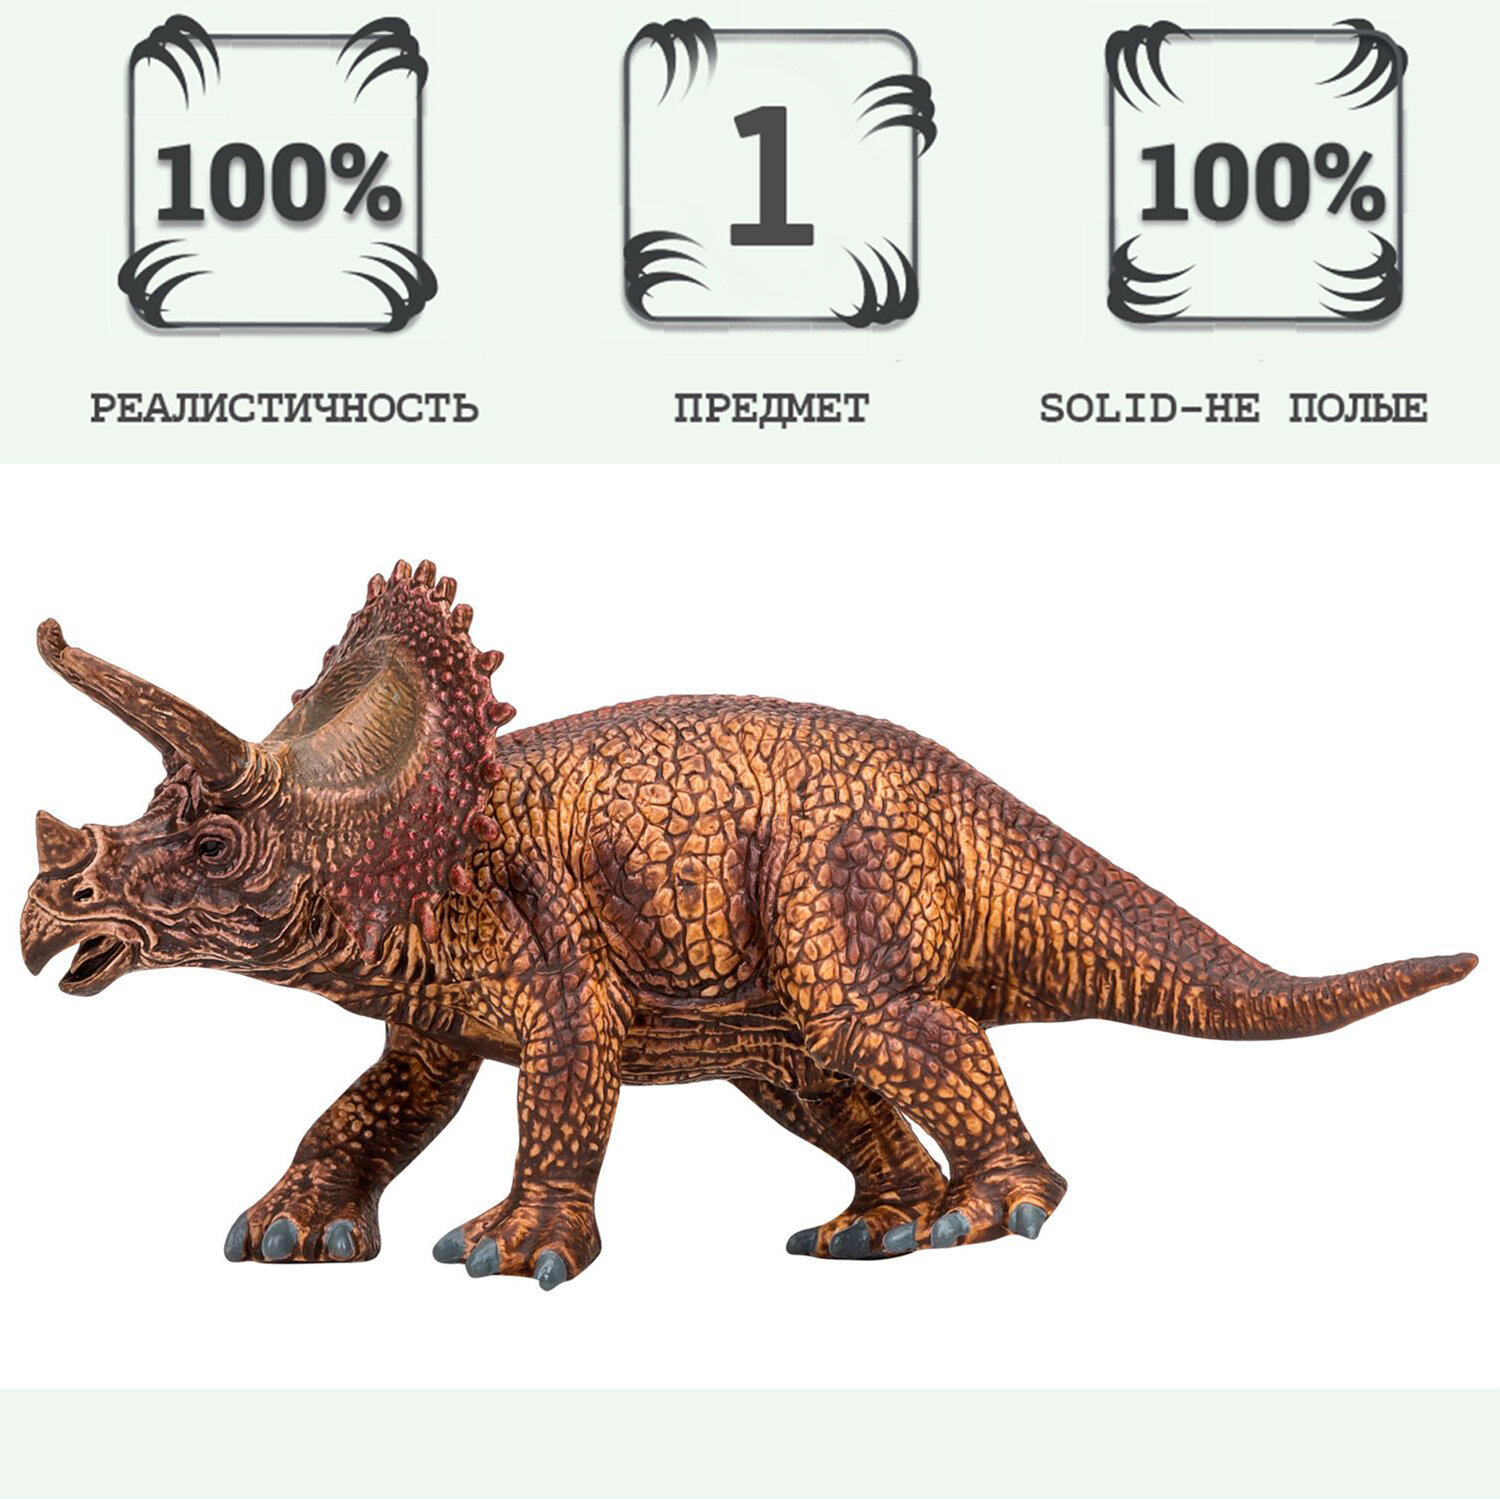 Игрушка динозавр серии "Мир динозавров" Аллозавр, фигурка длиной 20 см